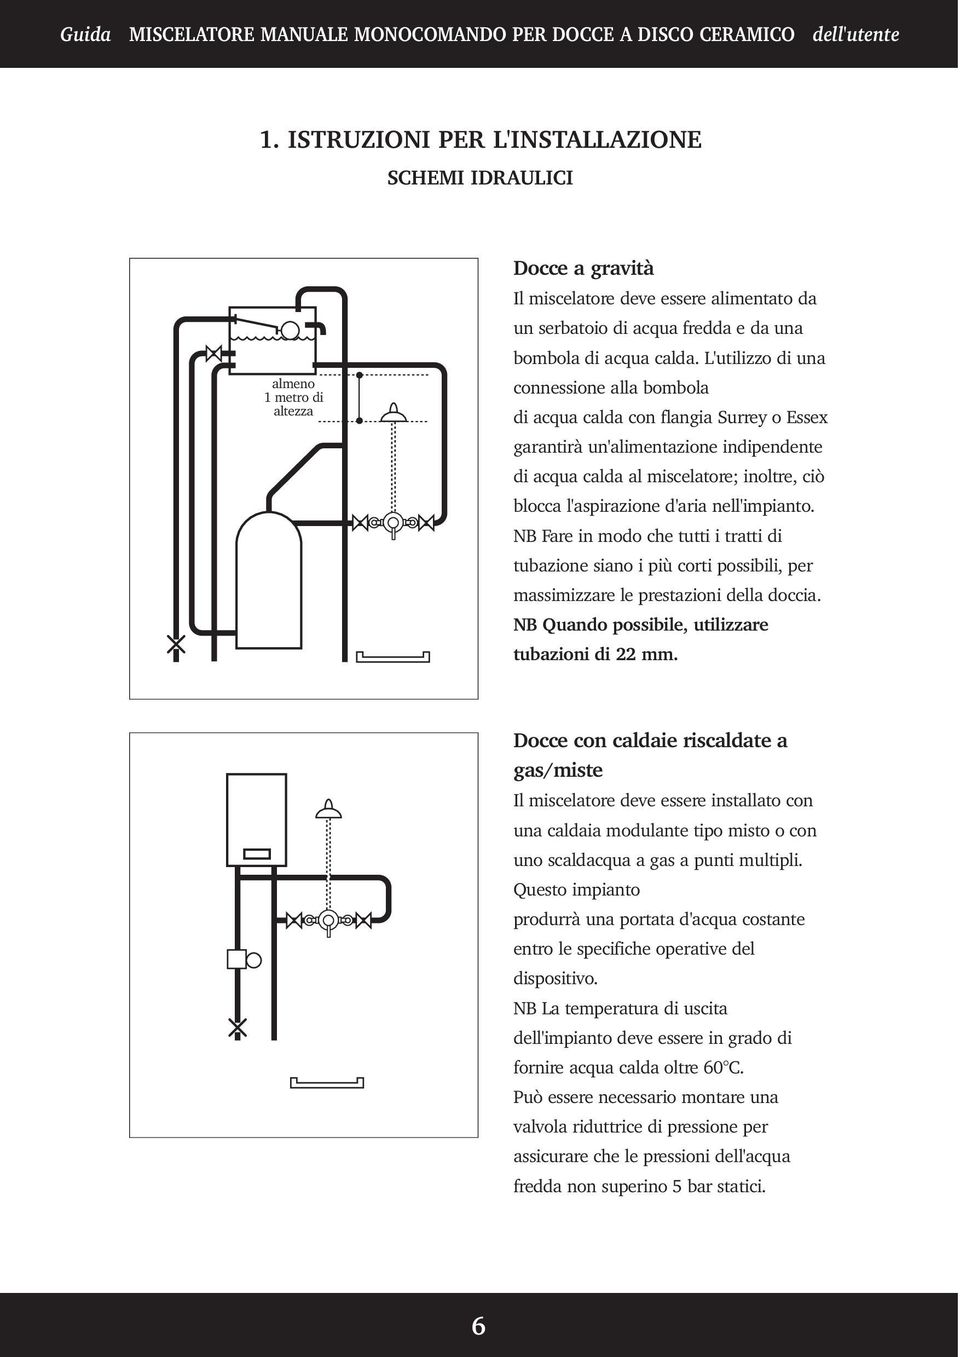 nell'impianto. NB Fare in modo che tutti i tratti di tubazione siano i più corti possibili, per massimizzare le prestazioni della doccia. NB Quando possibile, utilizzare tubazioni di 22 mm.